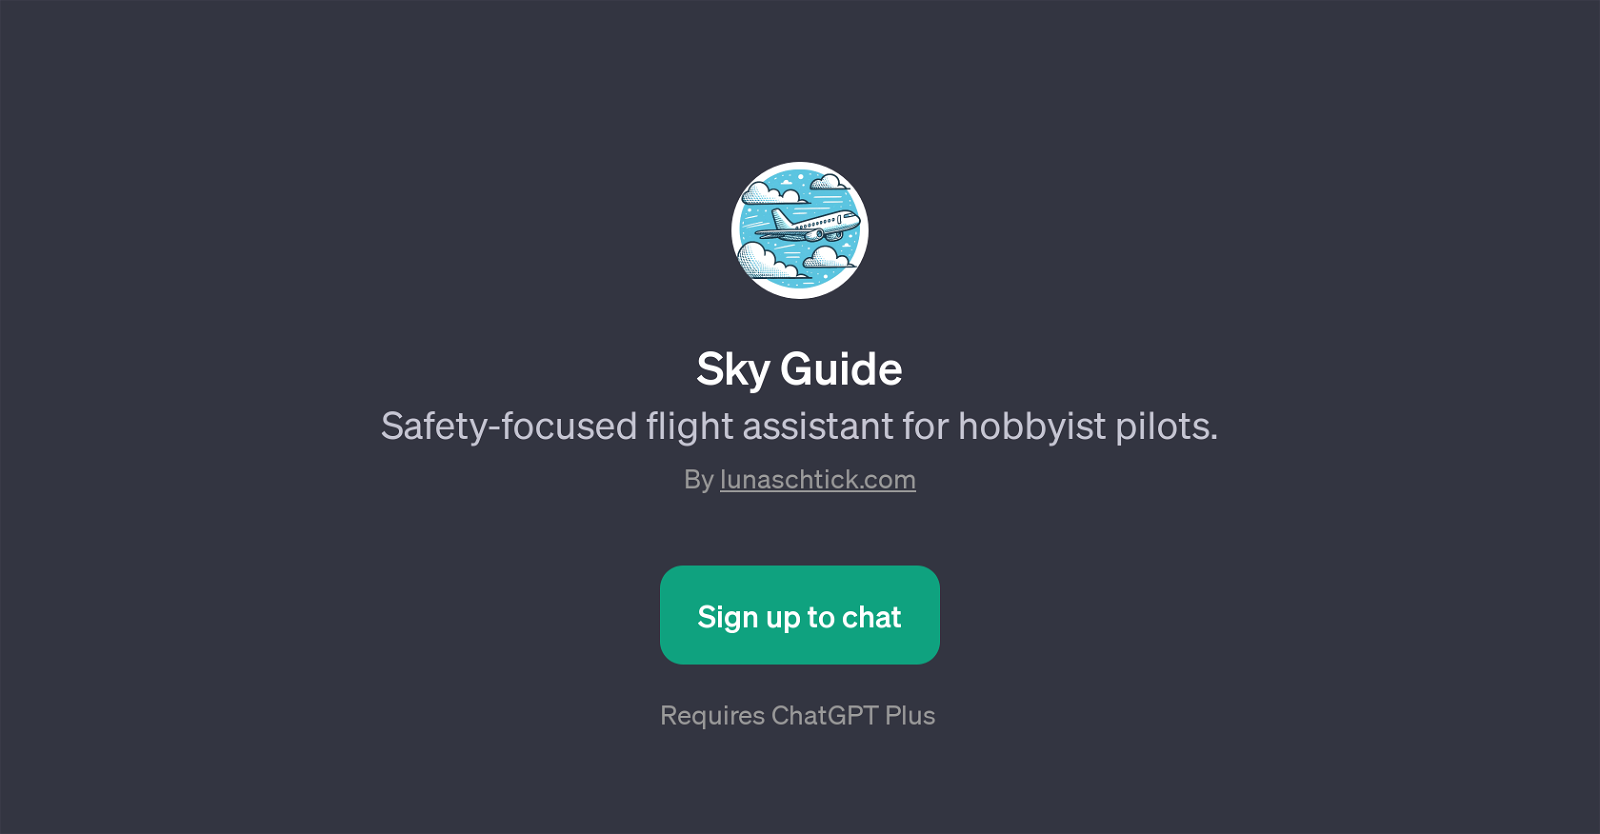 Sky Guide website